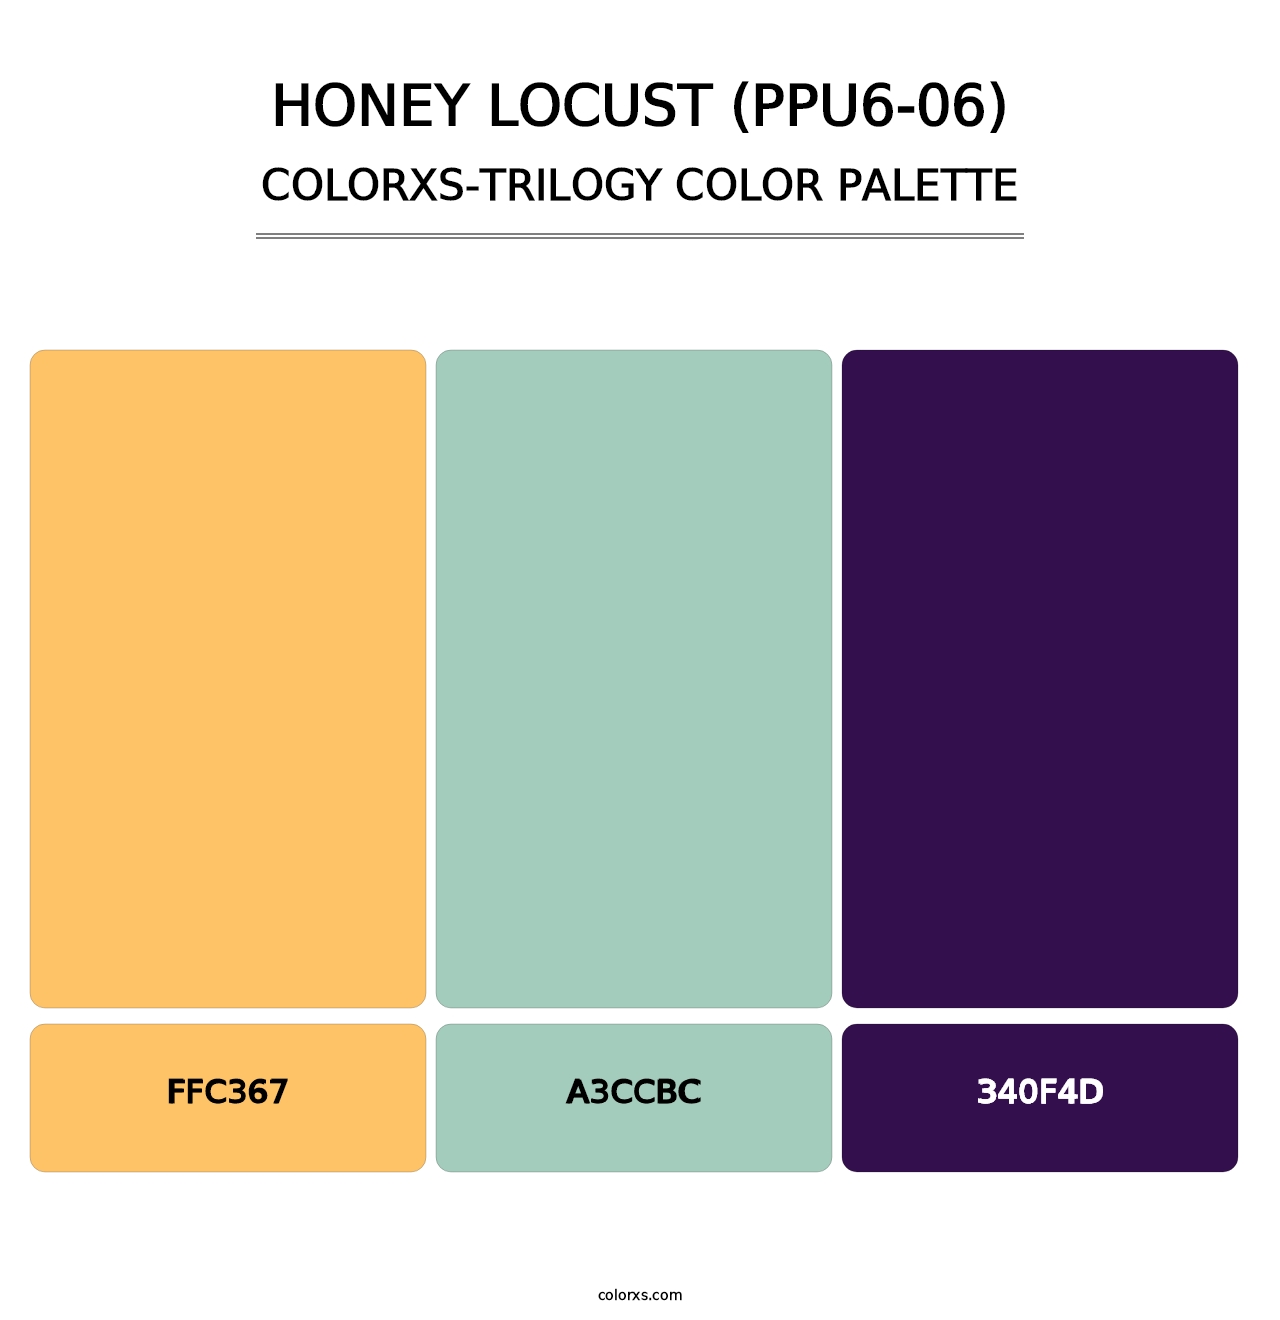 Honey Locust (PPU6-06) - Colorxs Trilogy Palette